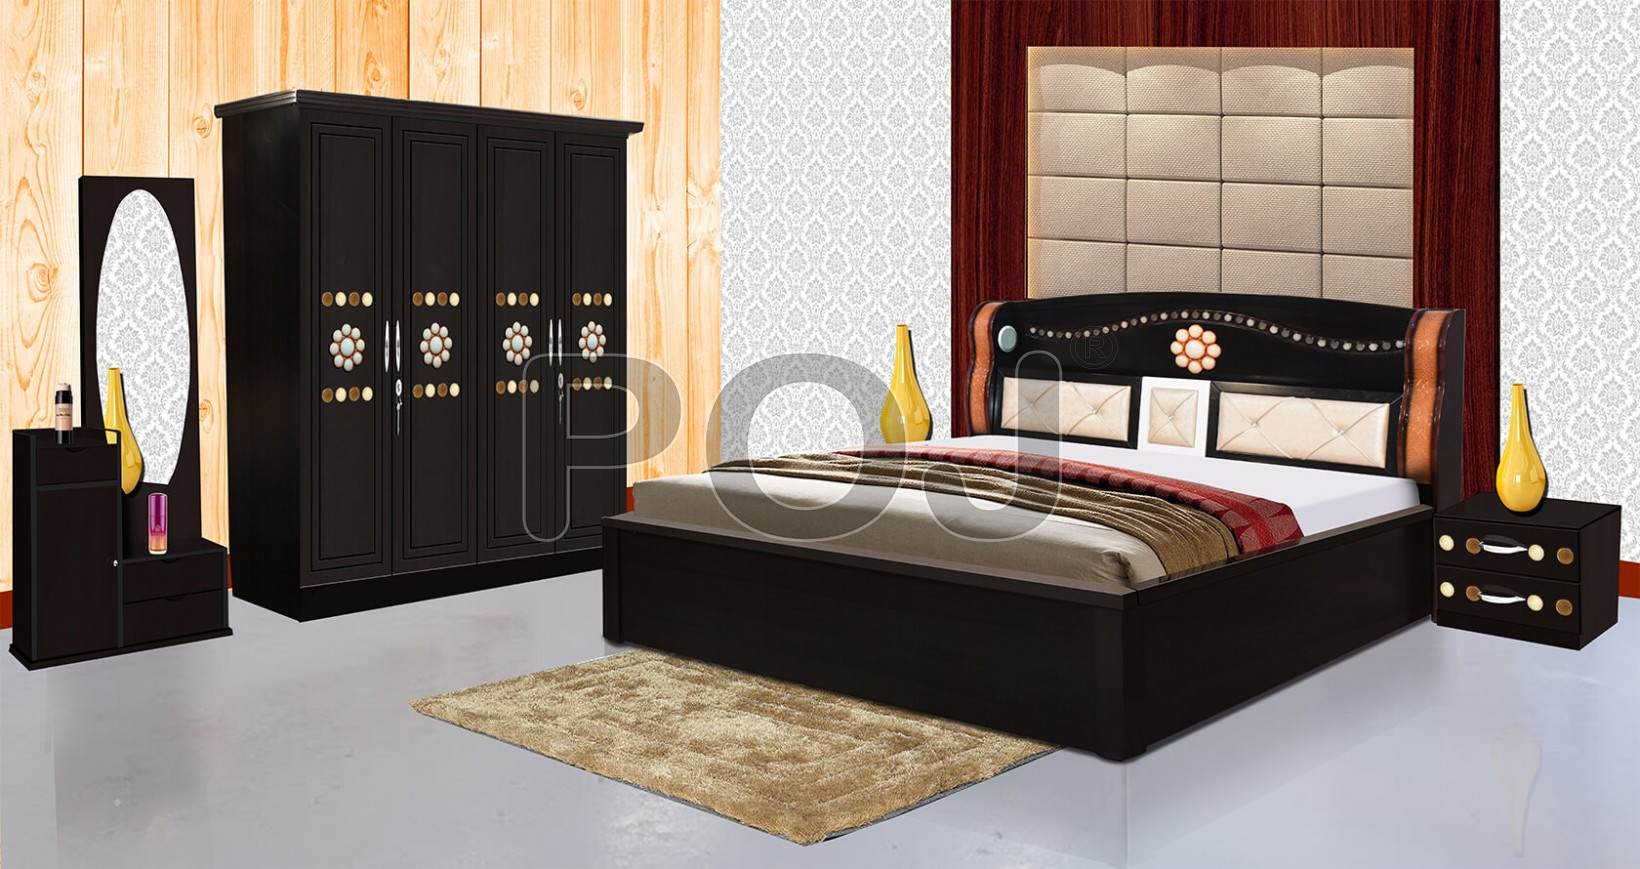 Buy Edeyna Complete Bedroom Sets With 4 Door Wardrobe Online At Best Prices  In Jharkhand, Bihar & Kolkata